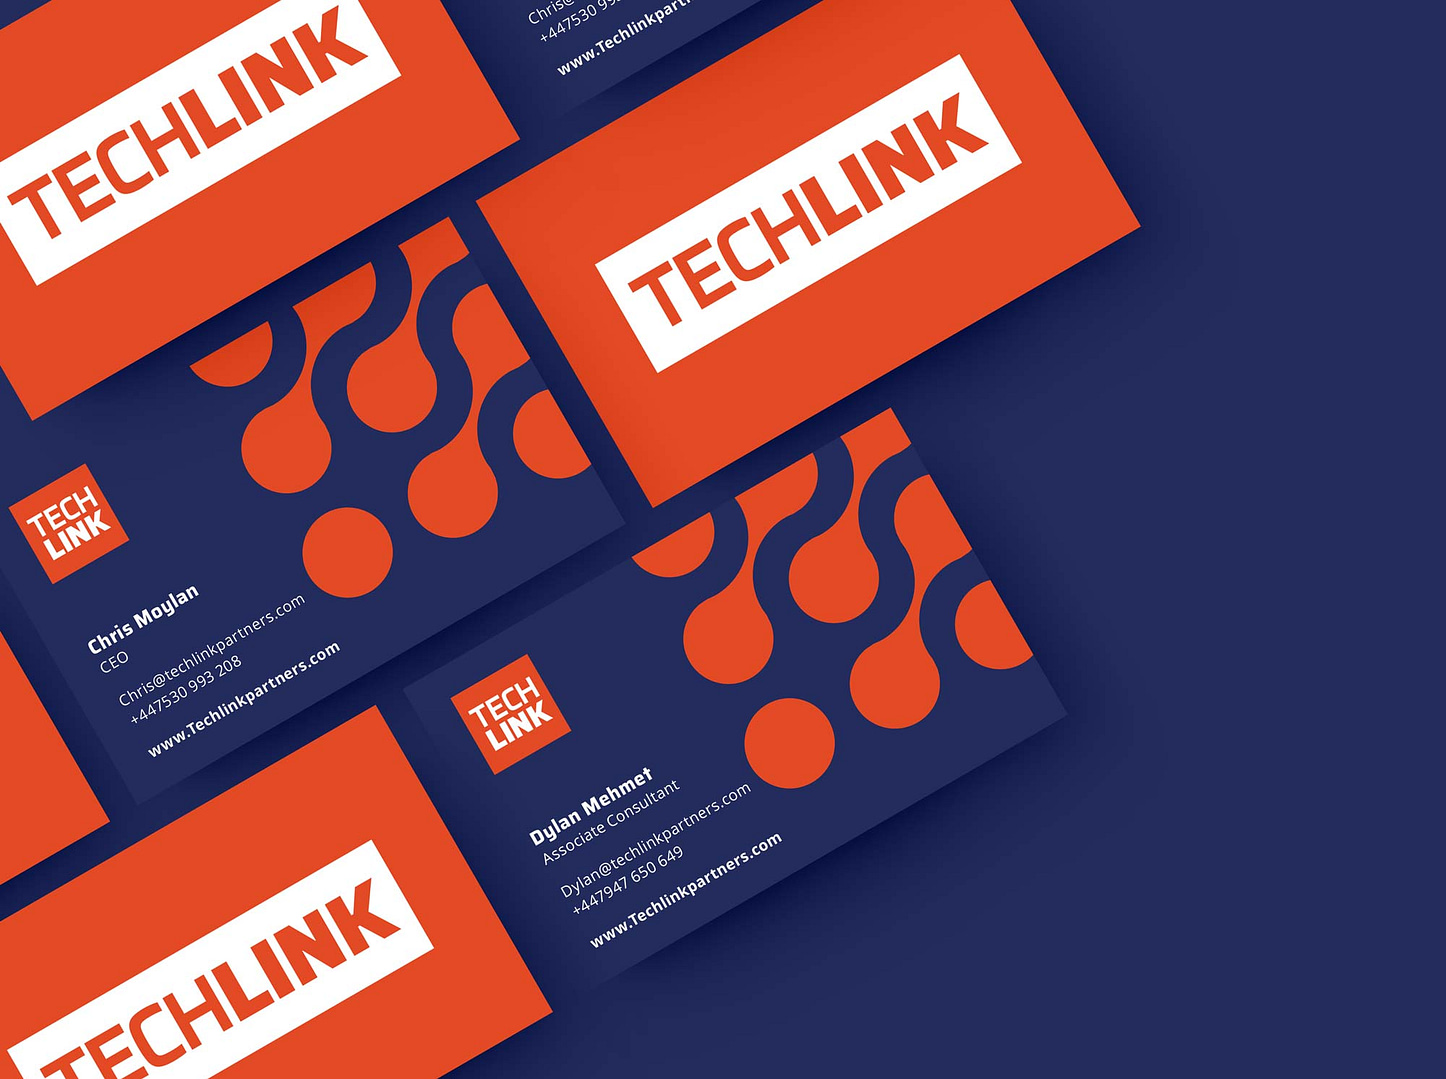 techlink business card mock up grid2